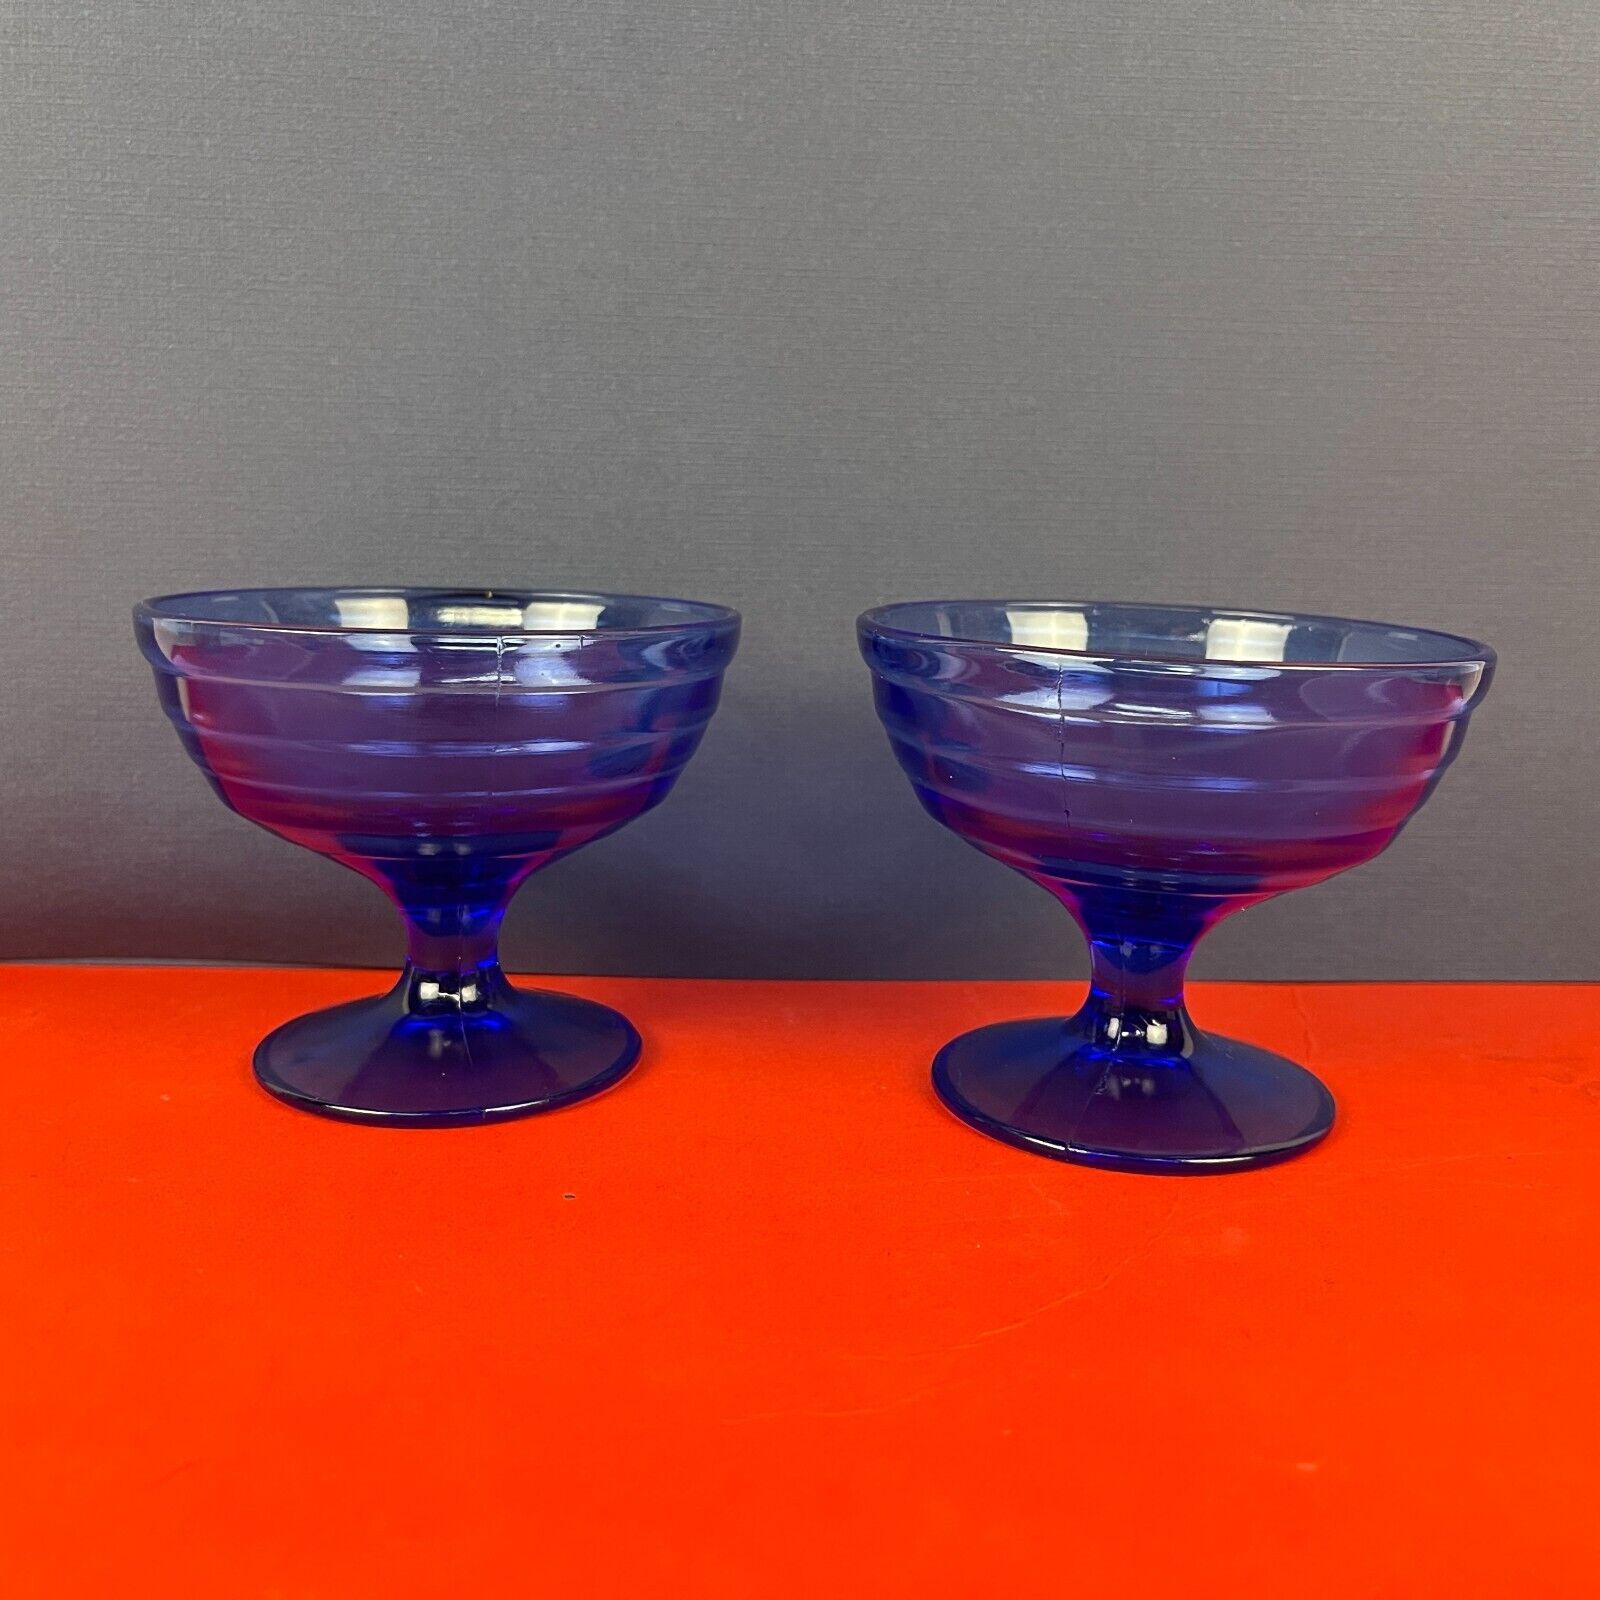 Pair of Vintage Unmarked Blue/Indigo Parfait or Dessert Cups